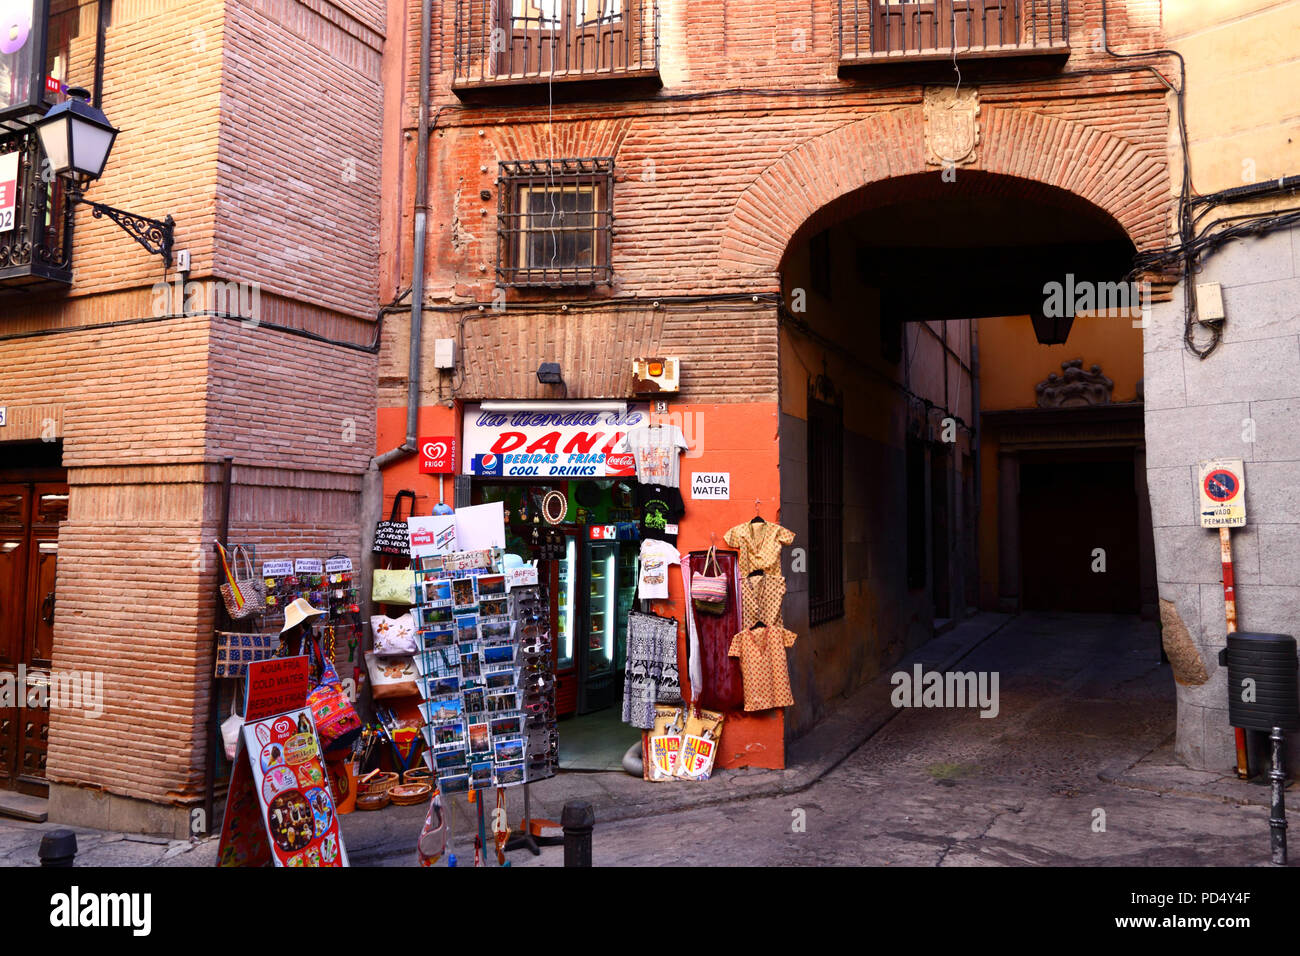 Souvenir shop in typical brick building, Toledo, Castile-La Mancha, Spain Stock Photo